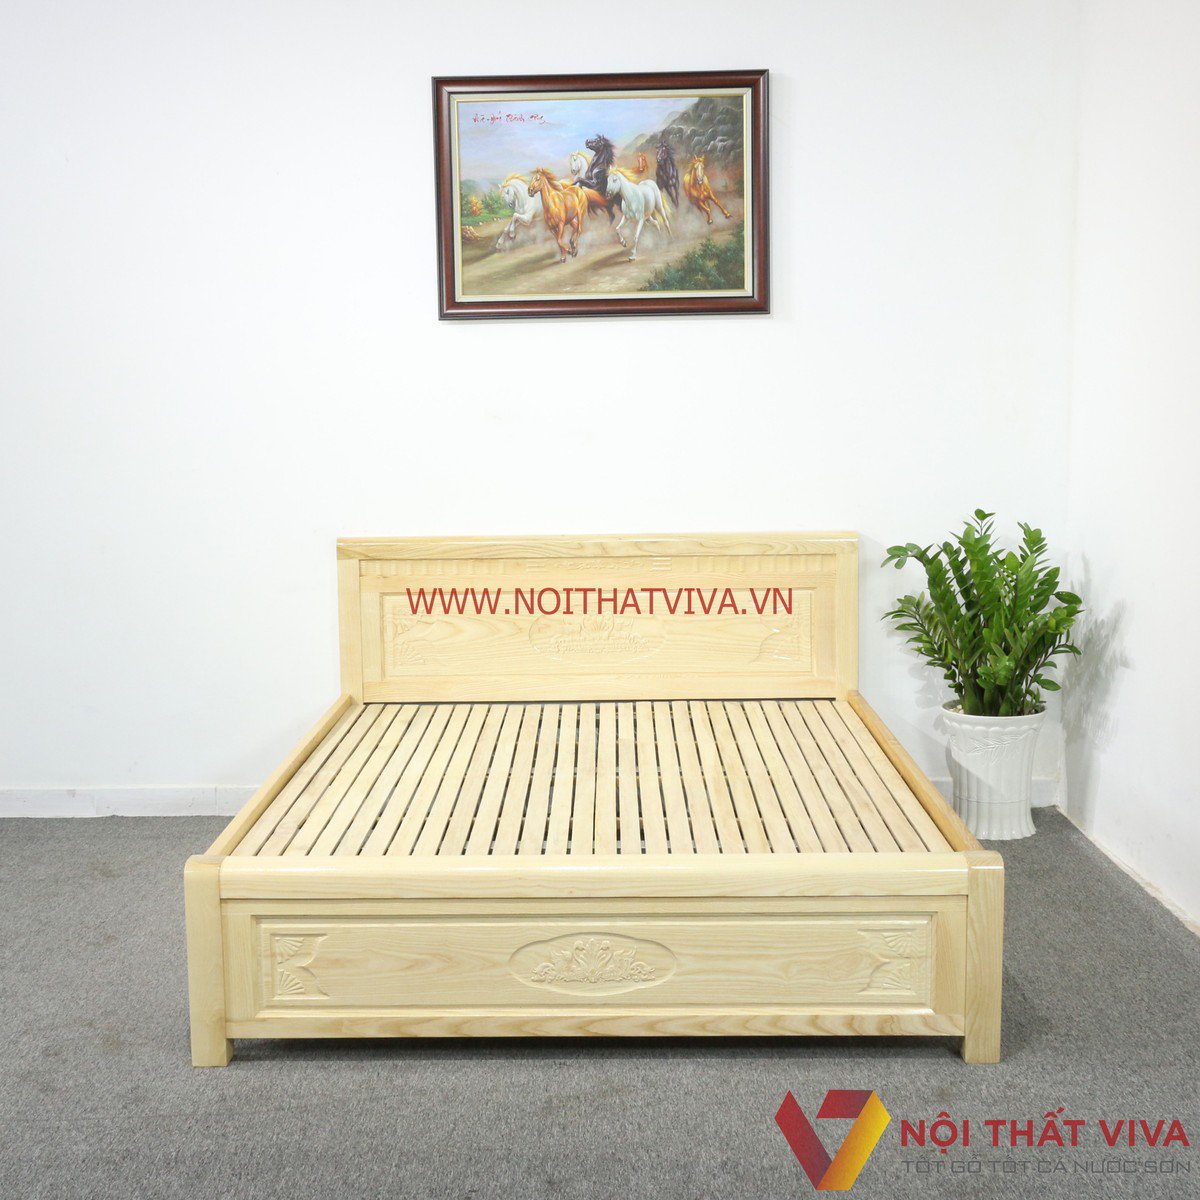 Gợi ý những mẫu giường ngủ bằng gỗ đẹp khiến ai thấy cũng mê